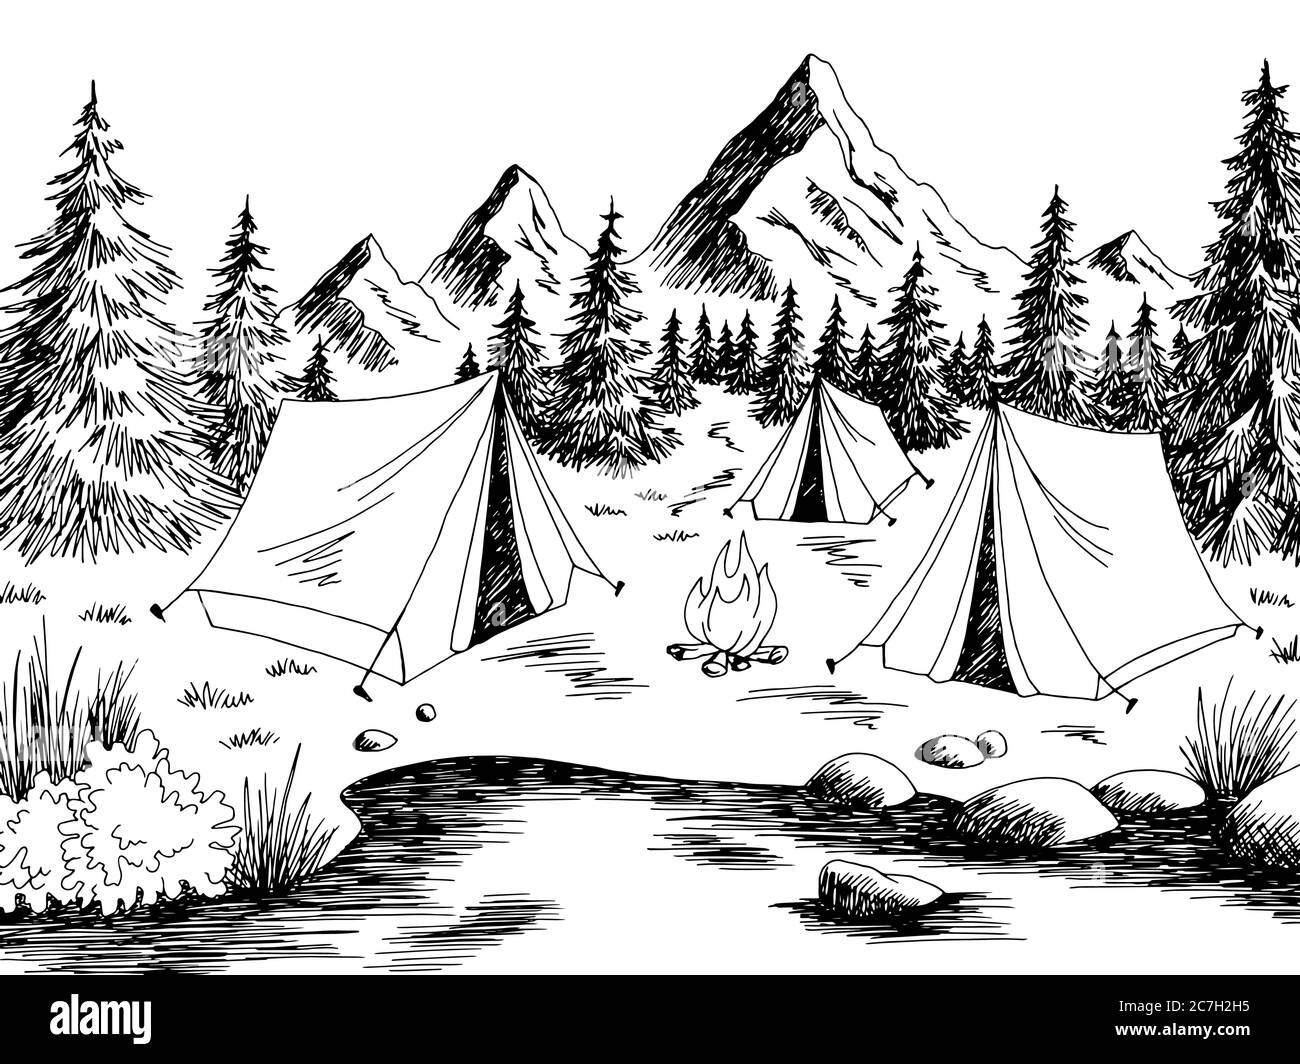 1529 Campsite Sketch Images Stock Photos  Vectors  Shutterstock